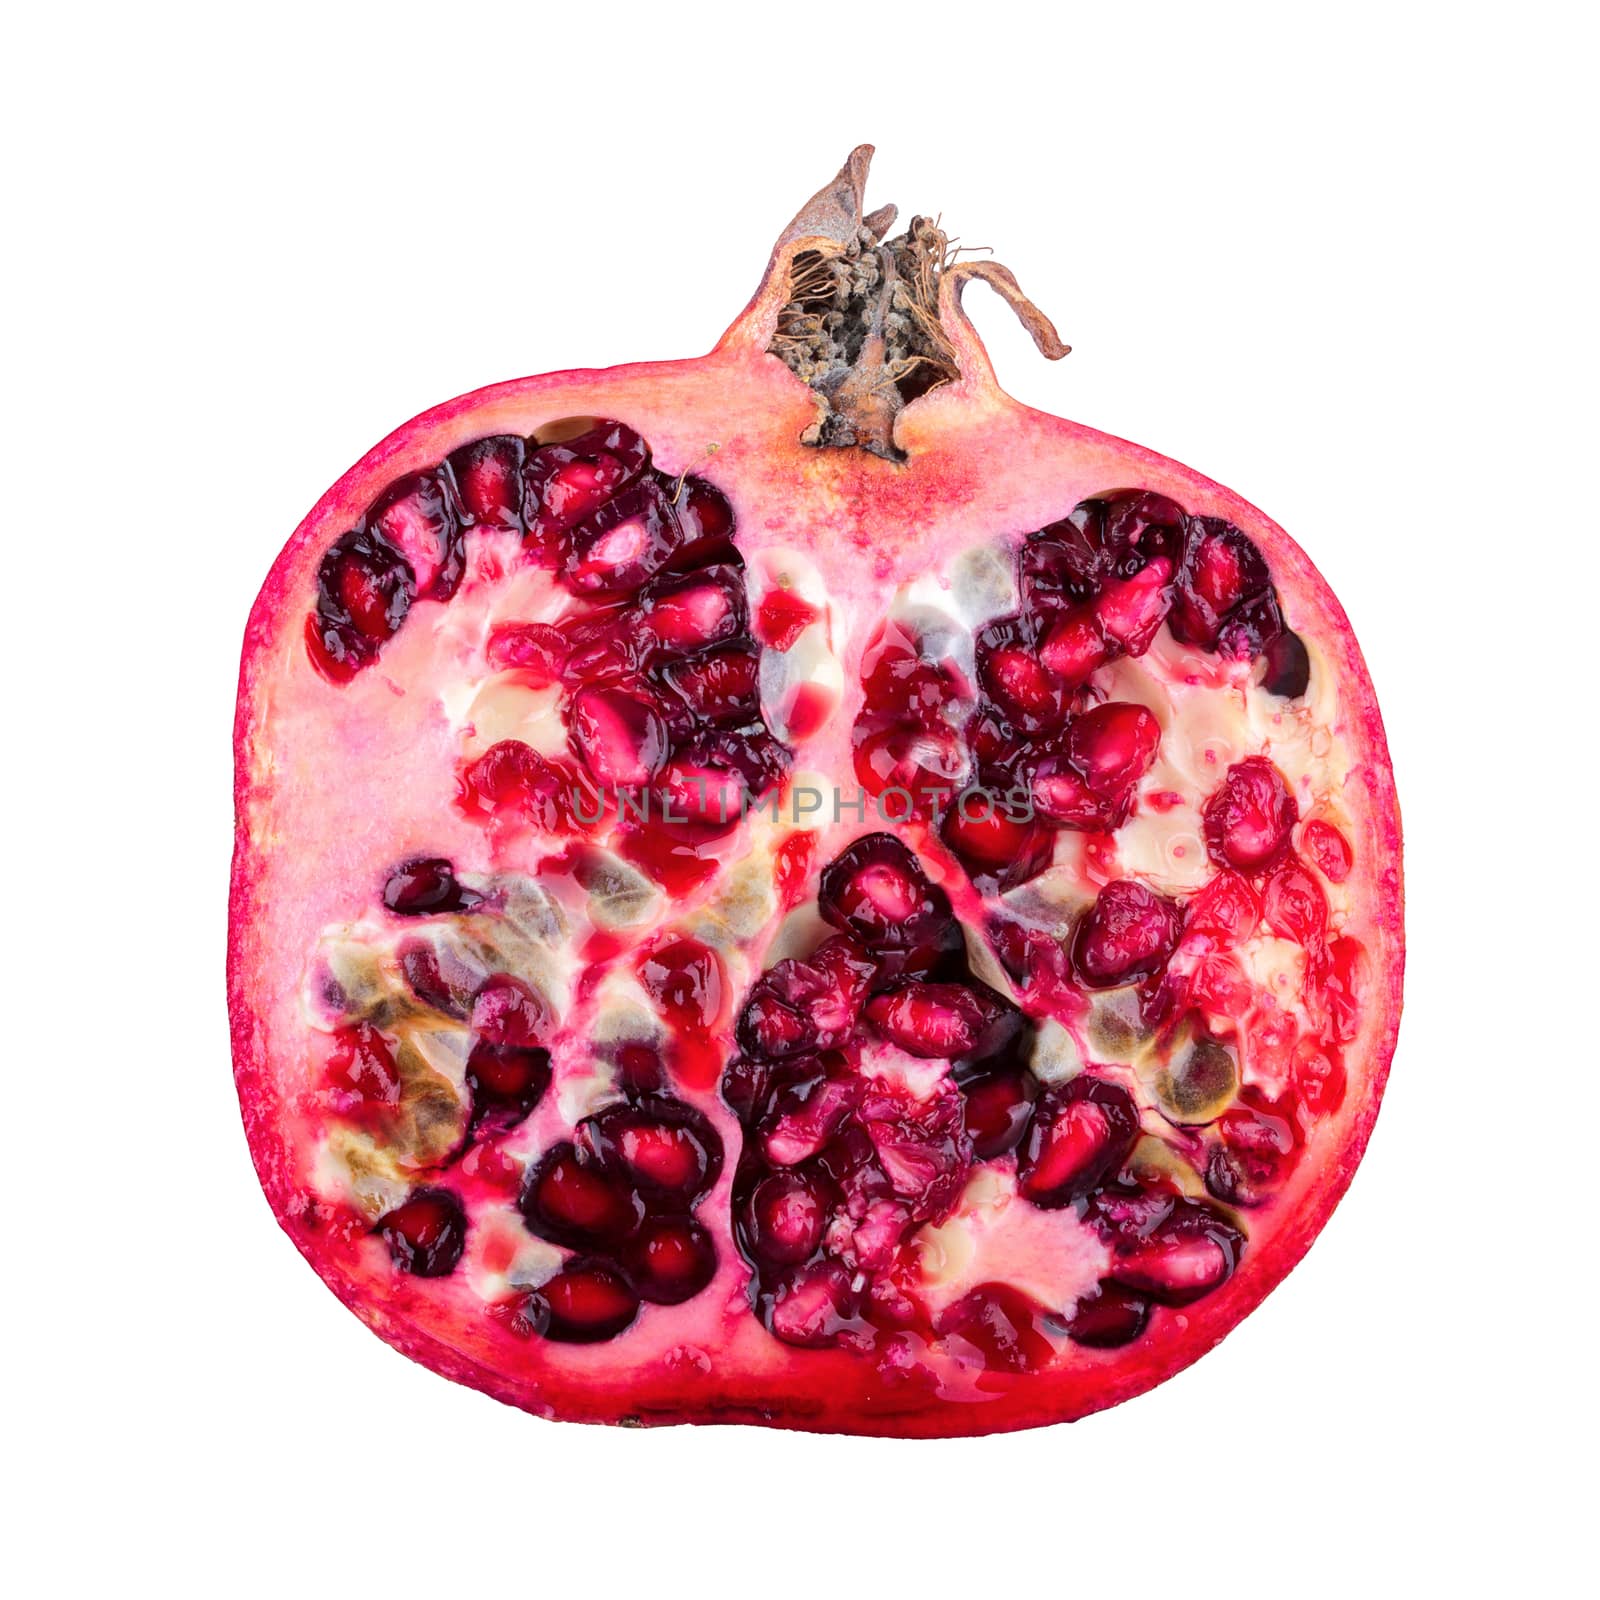 Half of pomegranate on a white background by neryx